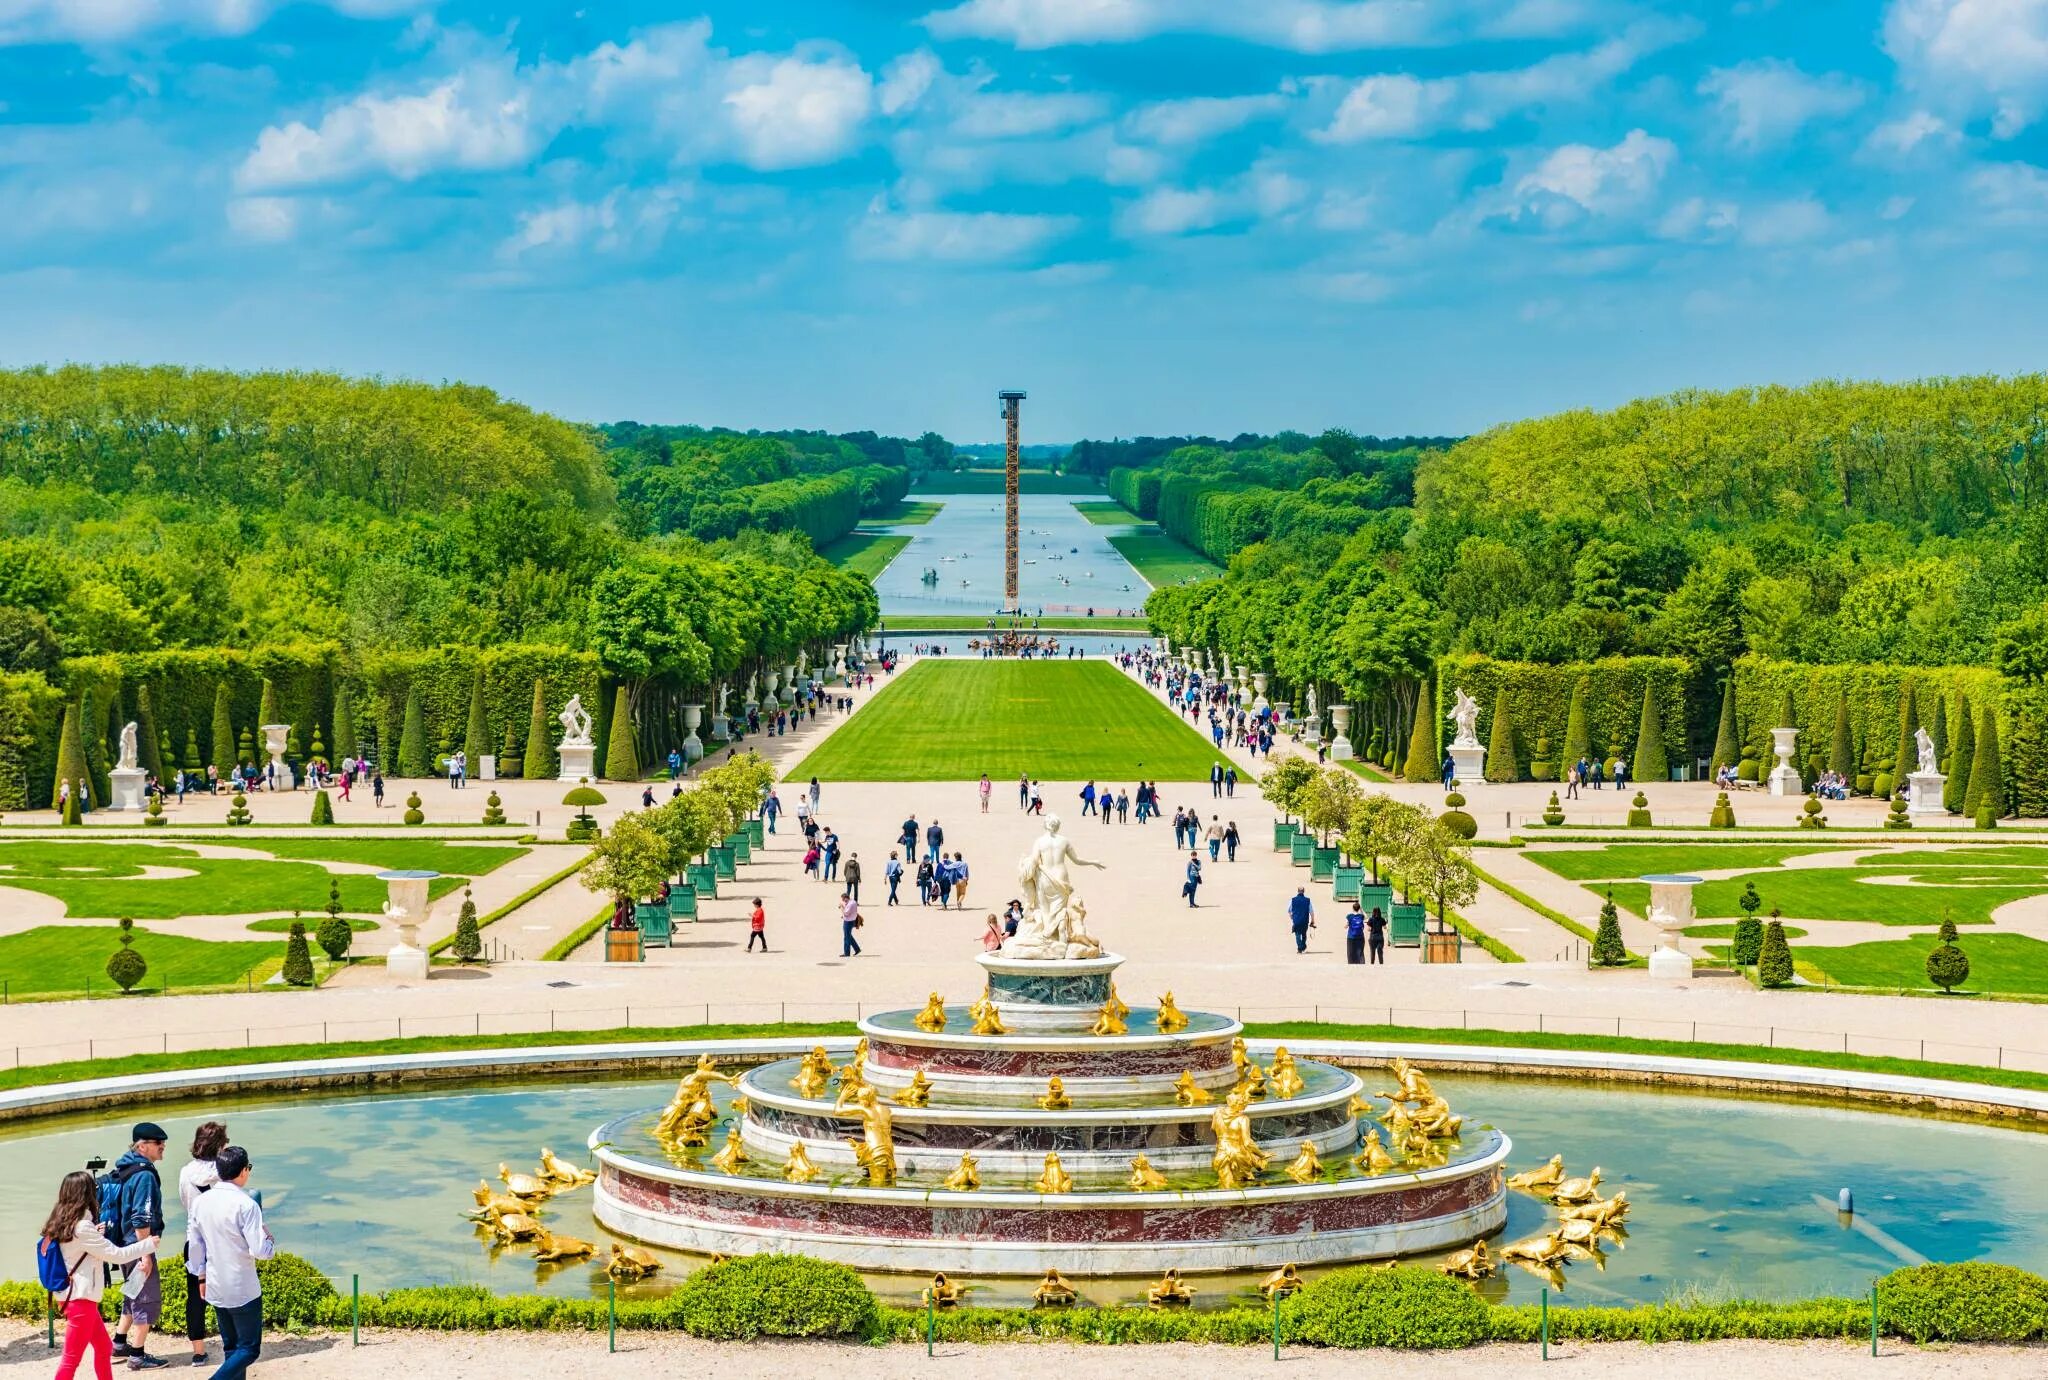 Версальский дворец сады и парки. Версальский дворец Версаль Франция. Парк Версаль в Париже. Дворец и парк в Версале Франция. Про версаль